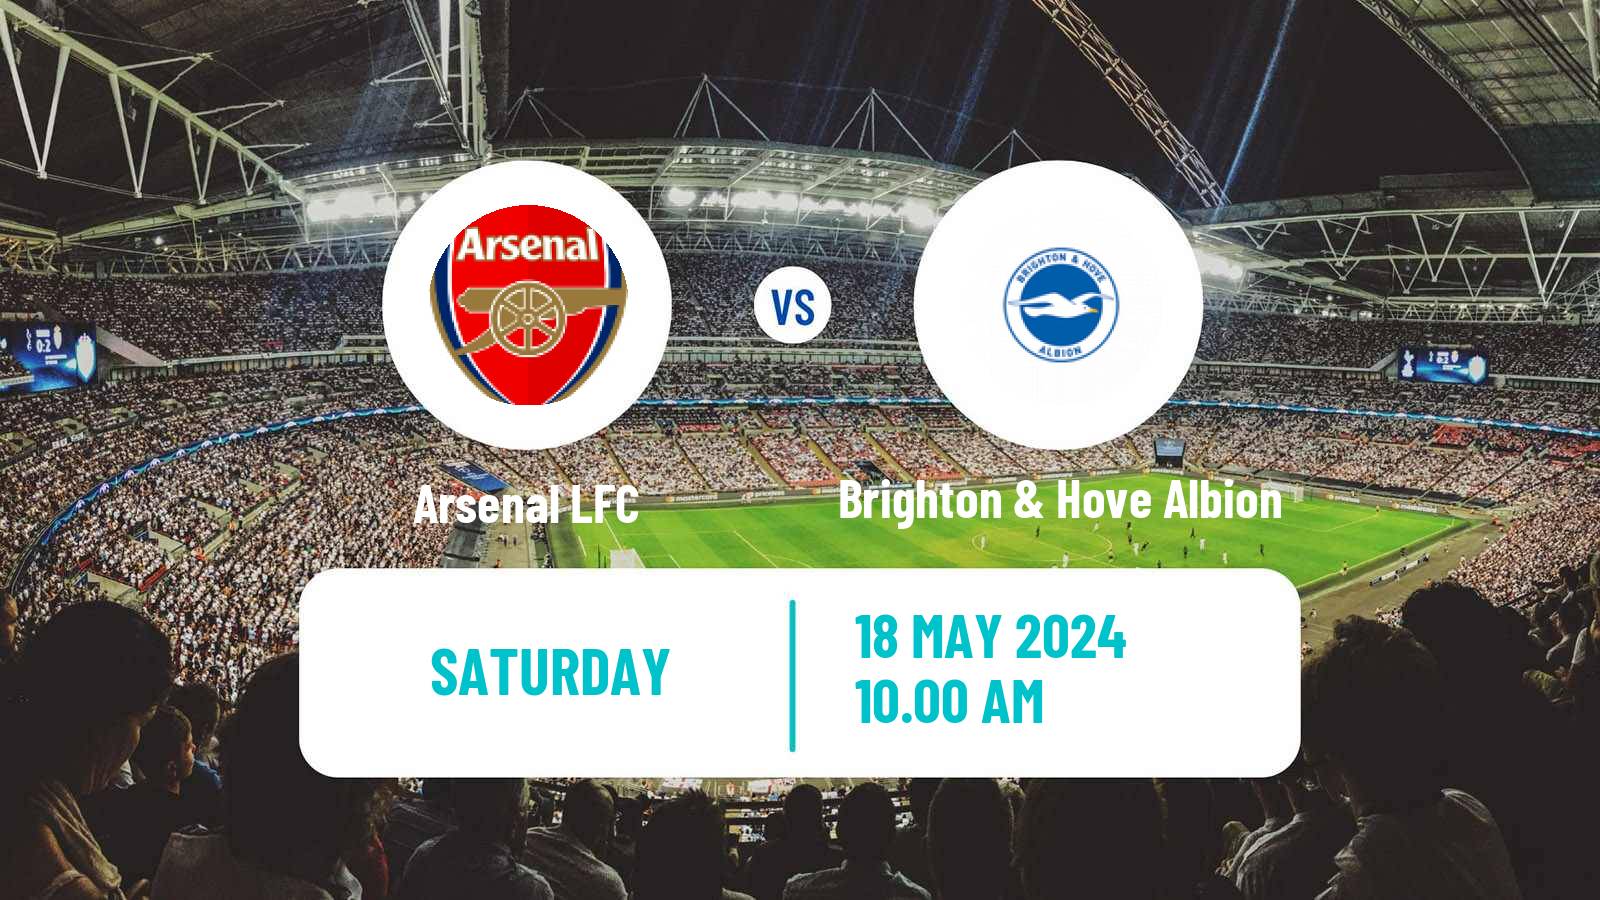 Soccer English WSL Arsenal LFC - Brighton & Hove Albion